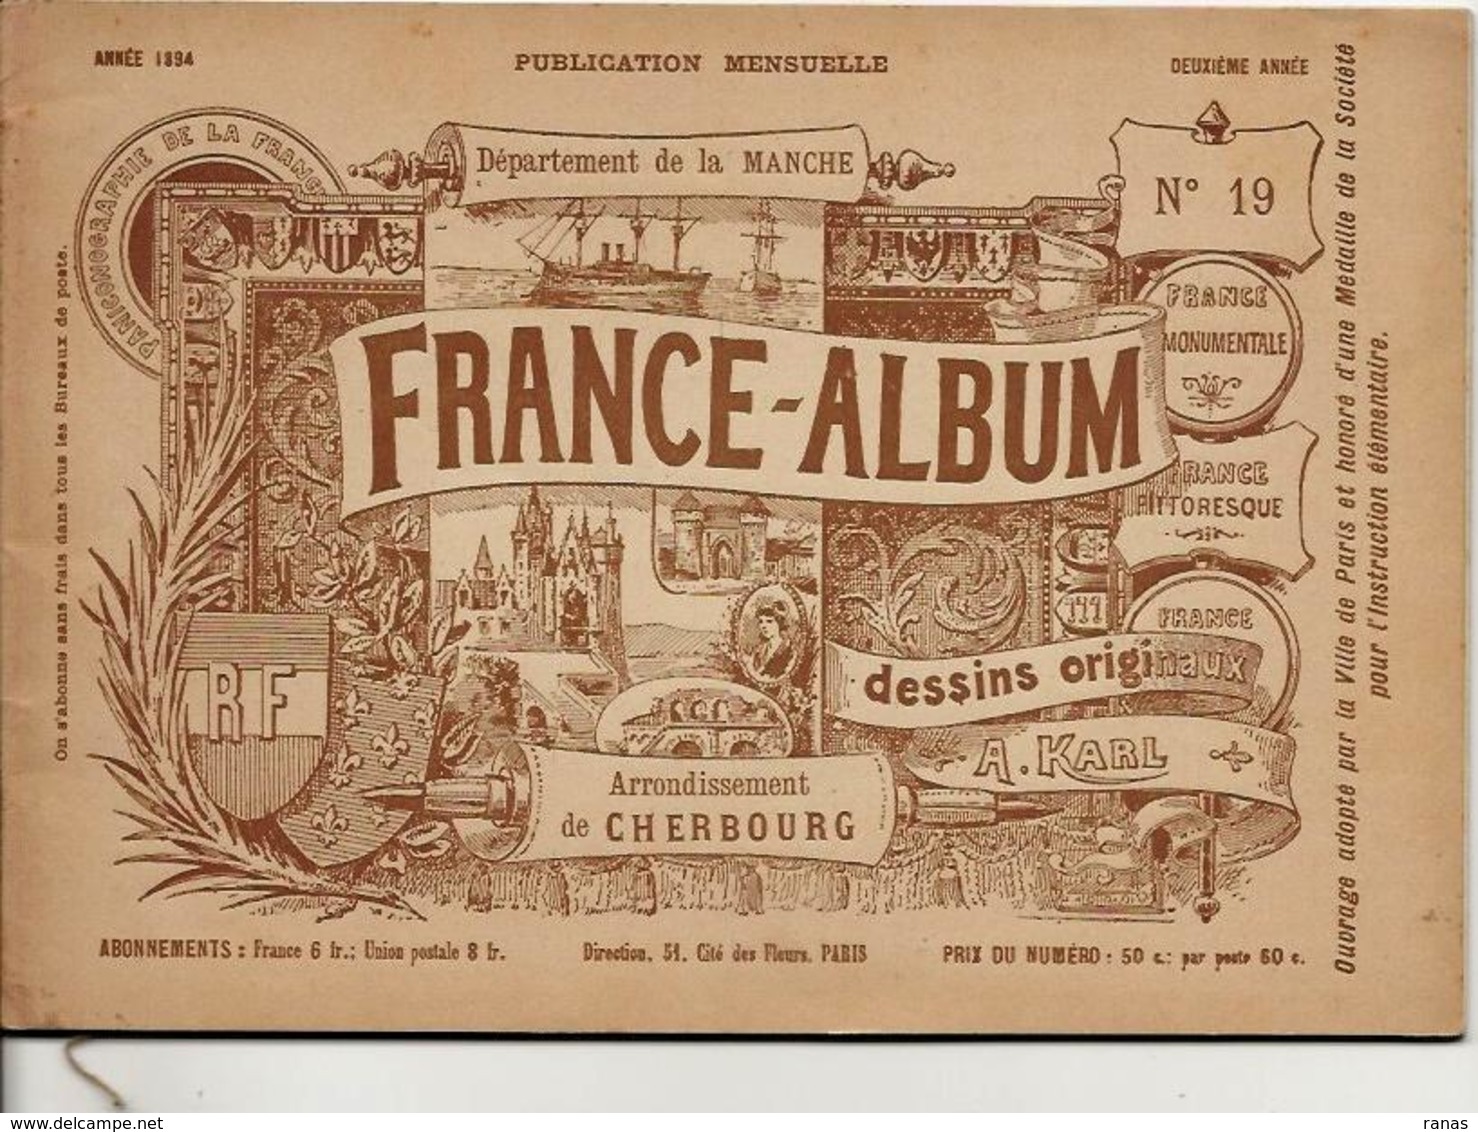 Manche 50 France Album De A. KARL, Carte Gravures Texte Publicités 1894 - Tourism Brochures